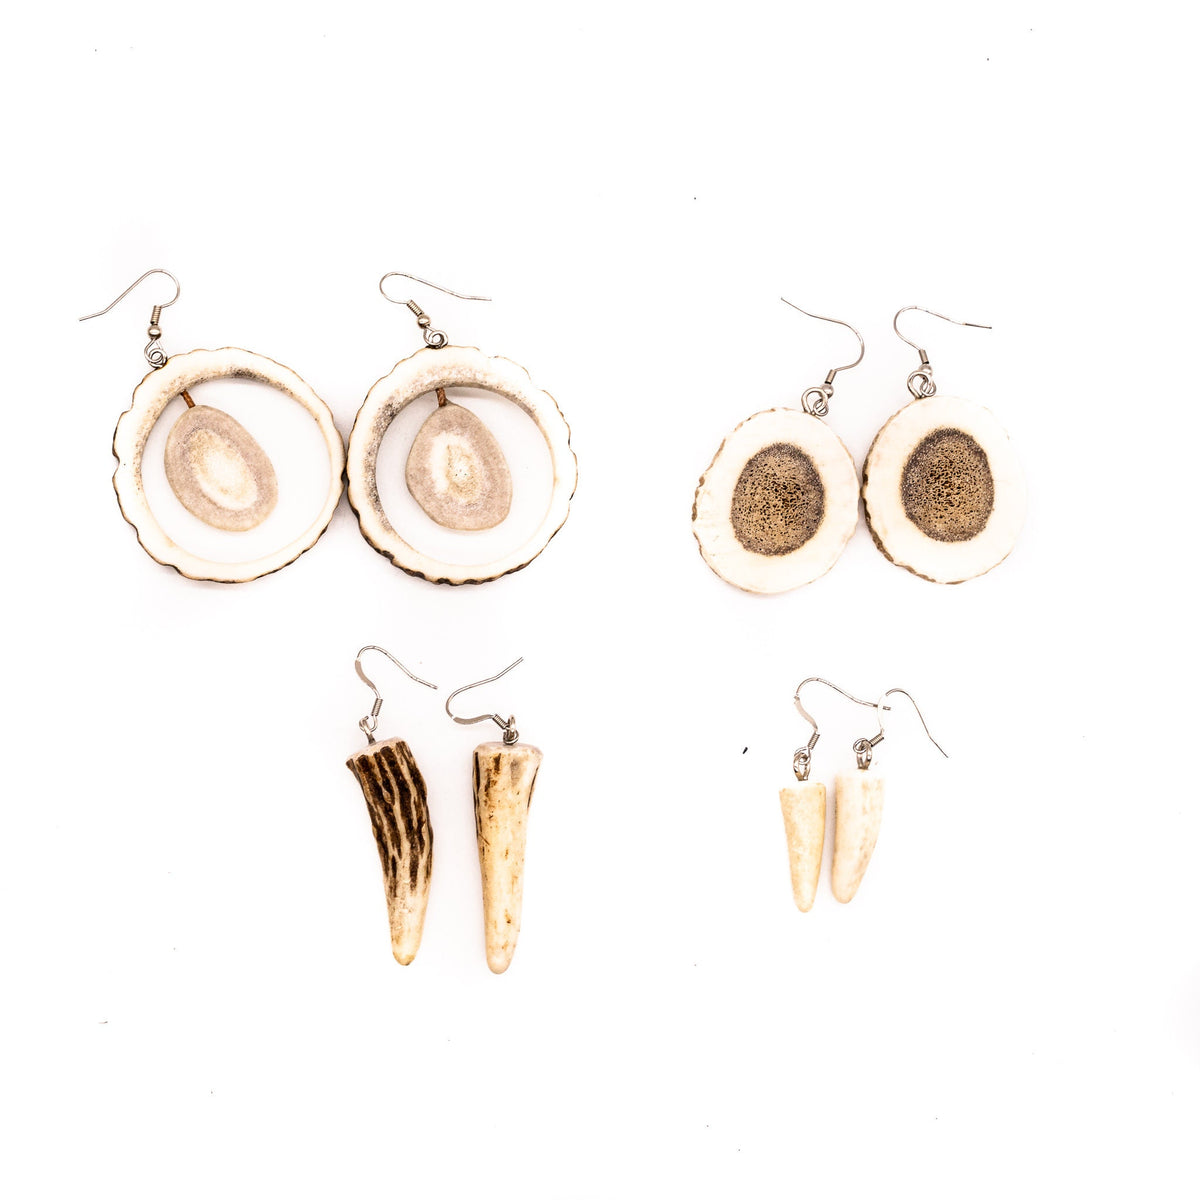 Antler Earrings - Real Natural Deer|Elk Antler Jewelry - Antler gifts - Antler Jewelry